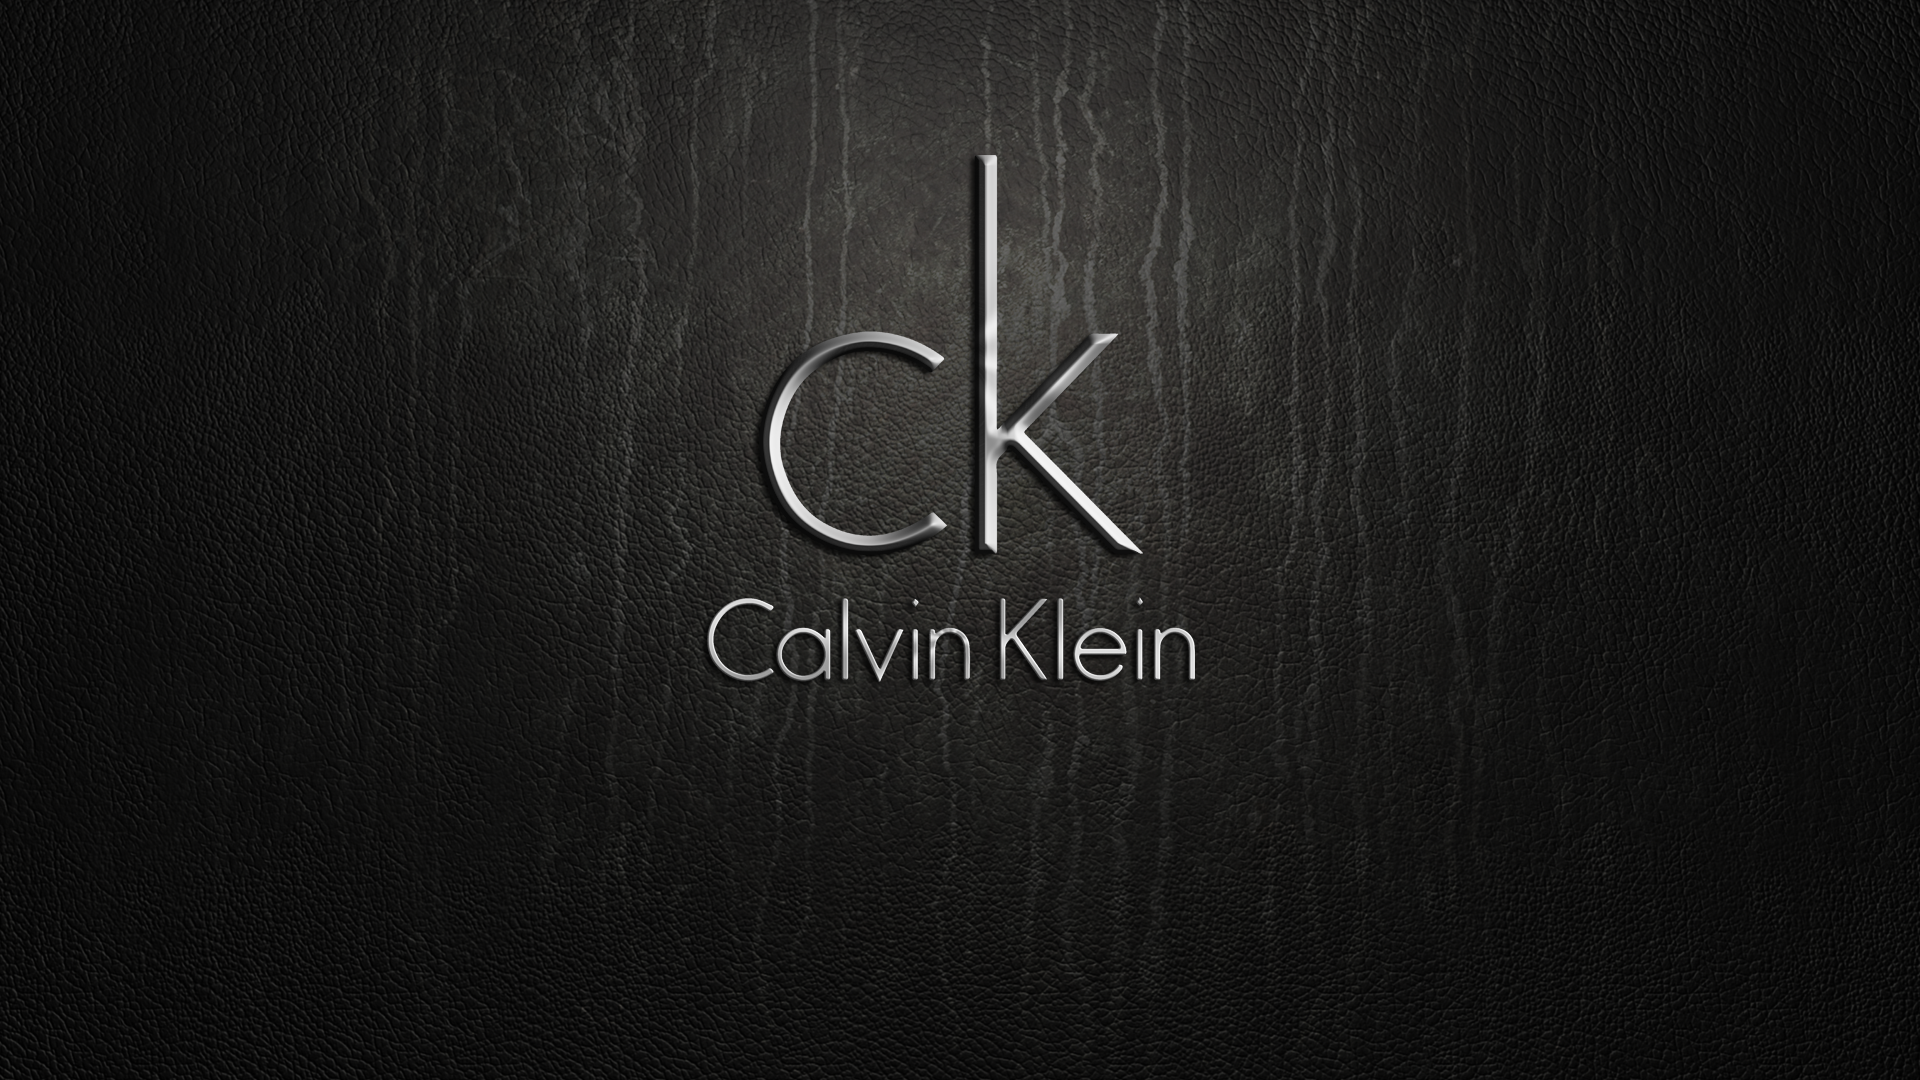 Company Logo Calvin Klein Texture 1920x1080